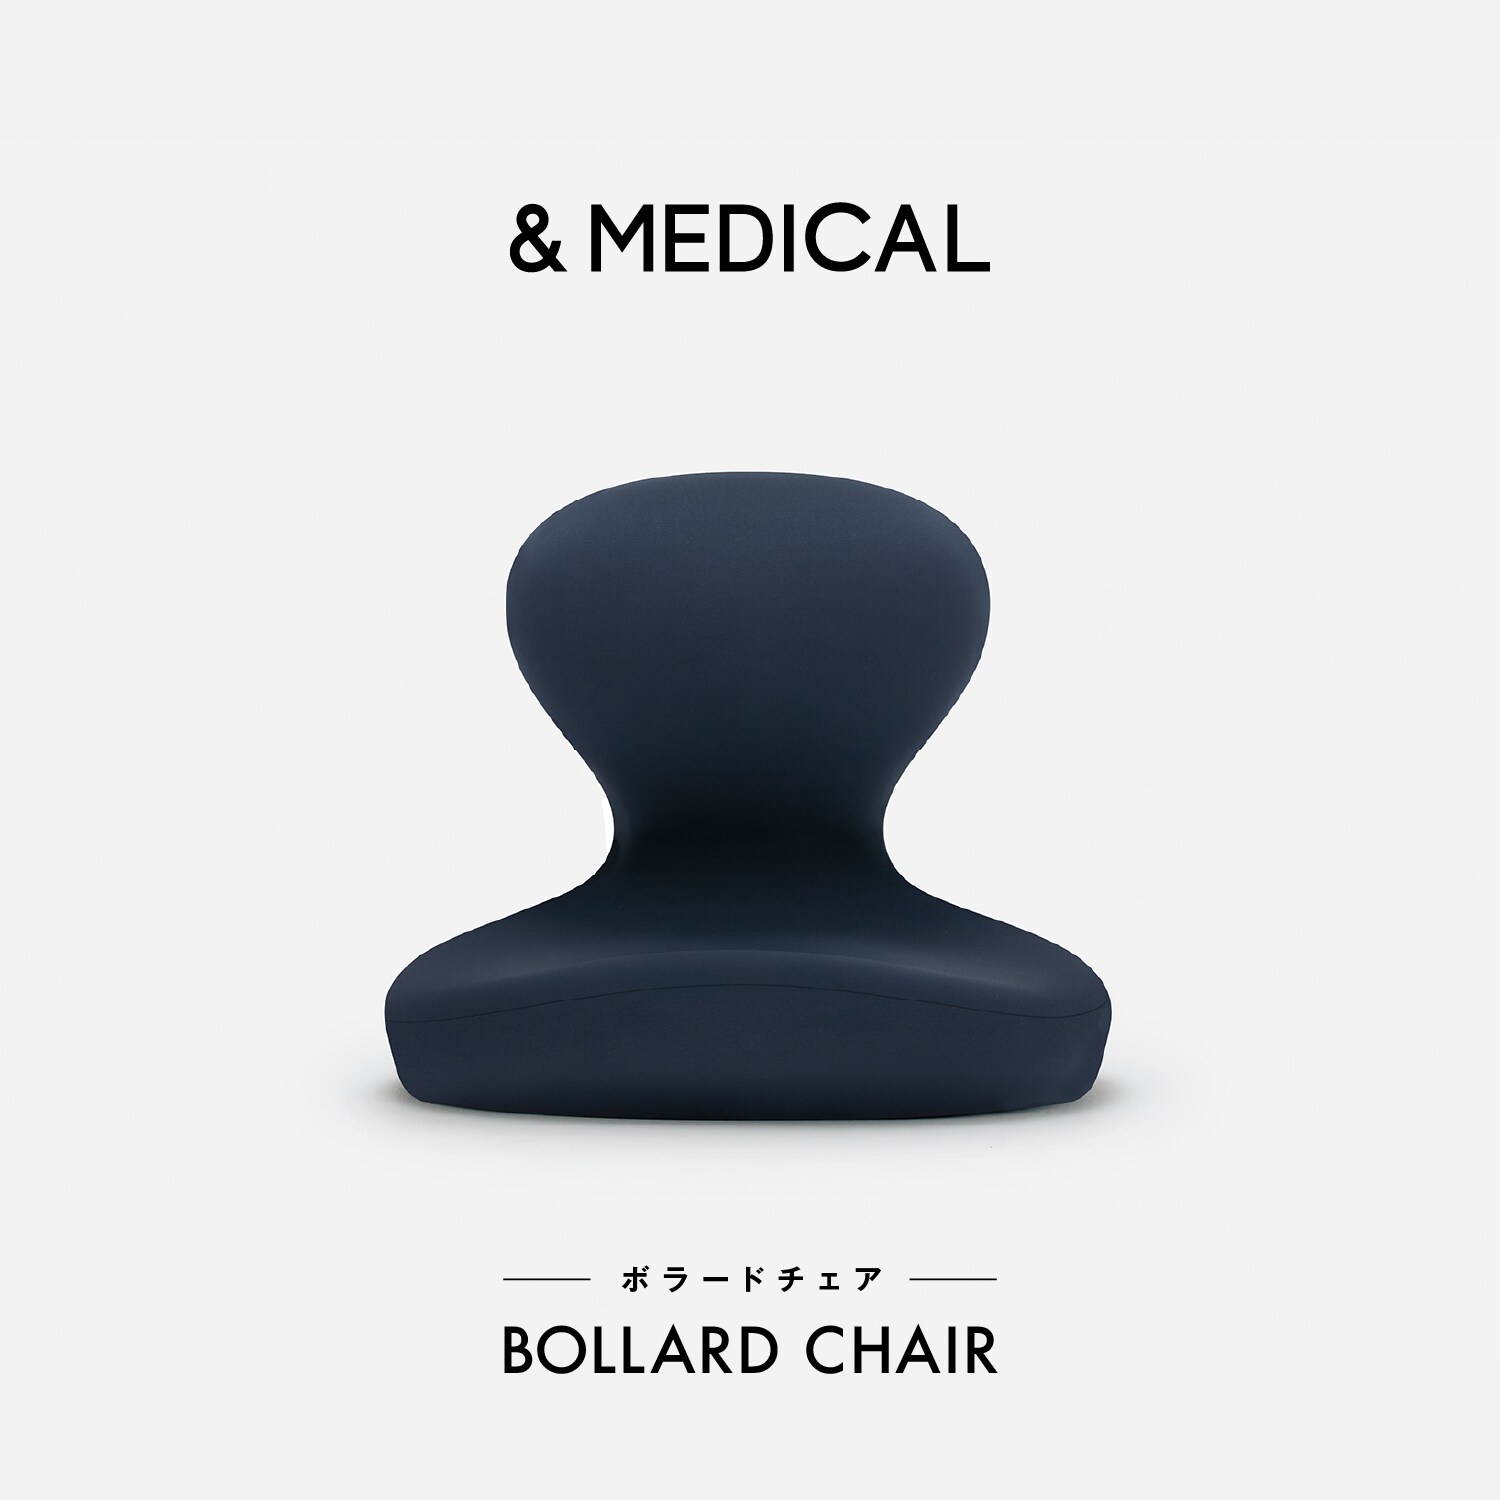 美姿勢サポート座椅子「BOLLARD CHAIR」